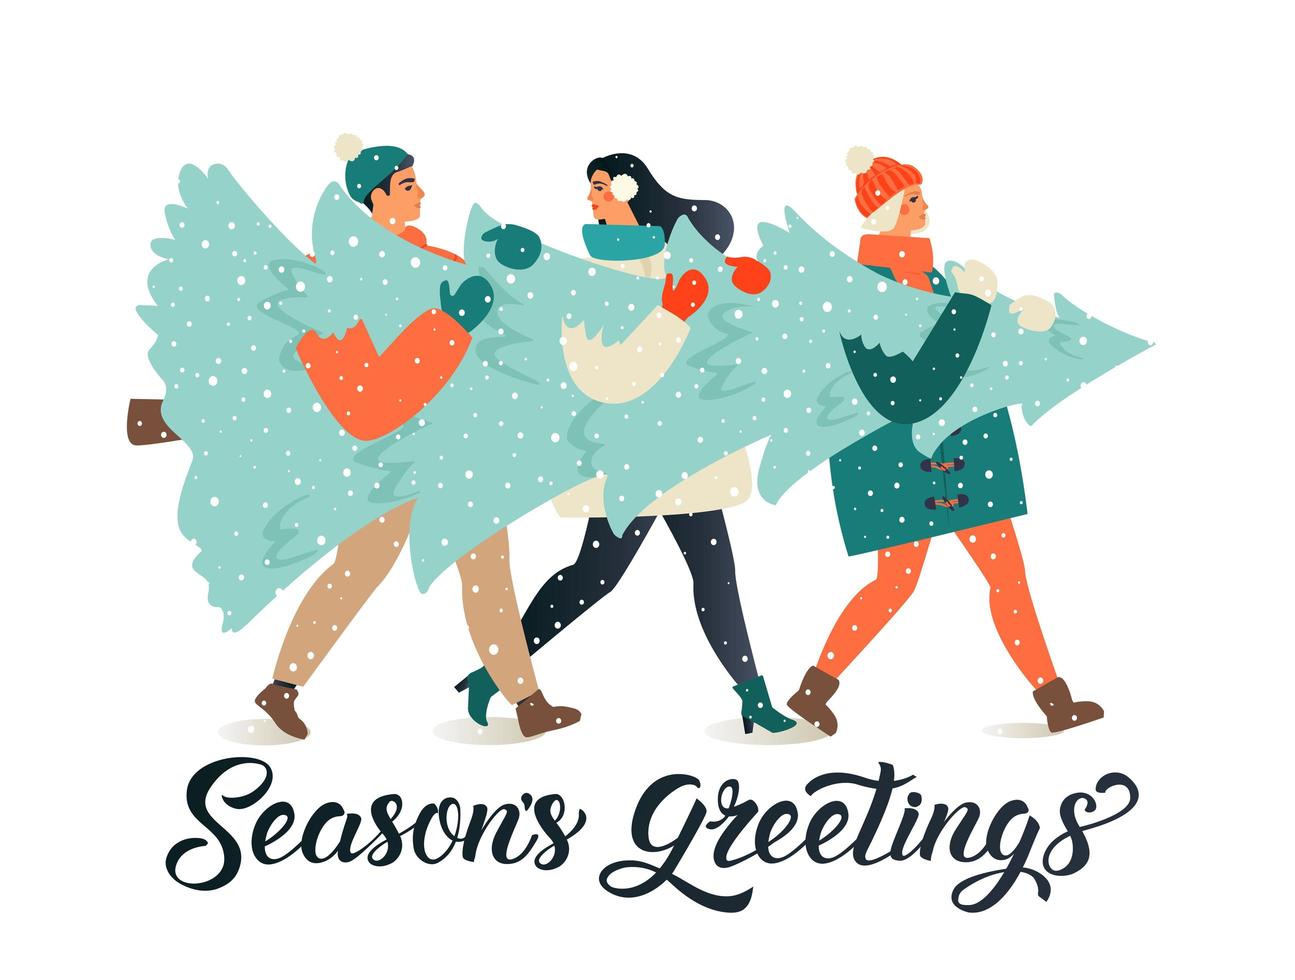 feliz navidad y próspero año nuevo tarjeta de felicitación. Grupo de personas que llevan un gran pino de Navidad juntos para la temporada navideña con adornos, regalos. vector